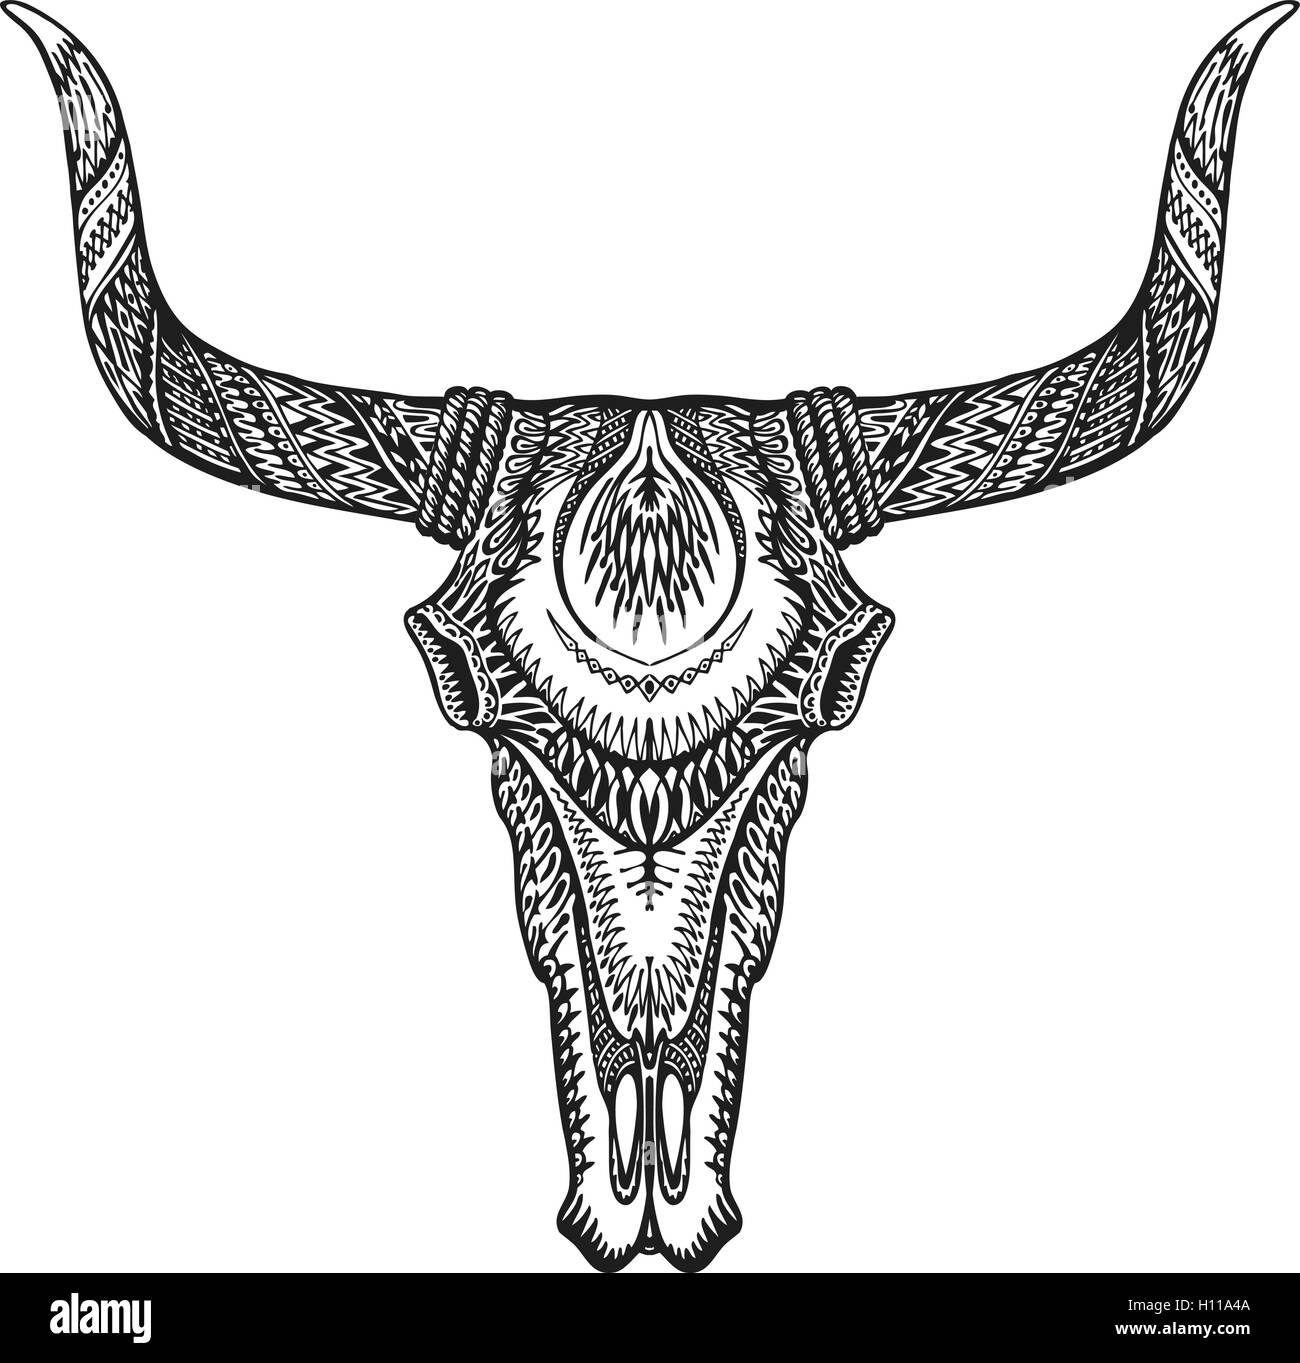 Dekorative Stier Schädel Tattoo tribal-Stil. Hand gezeichnet Vektor-illustration Stock Vektor